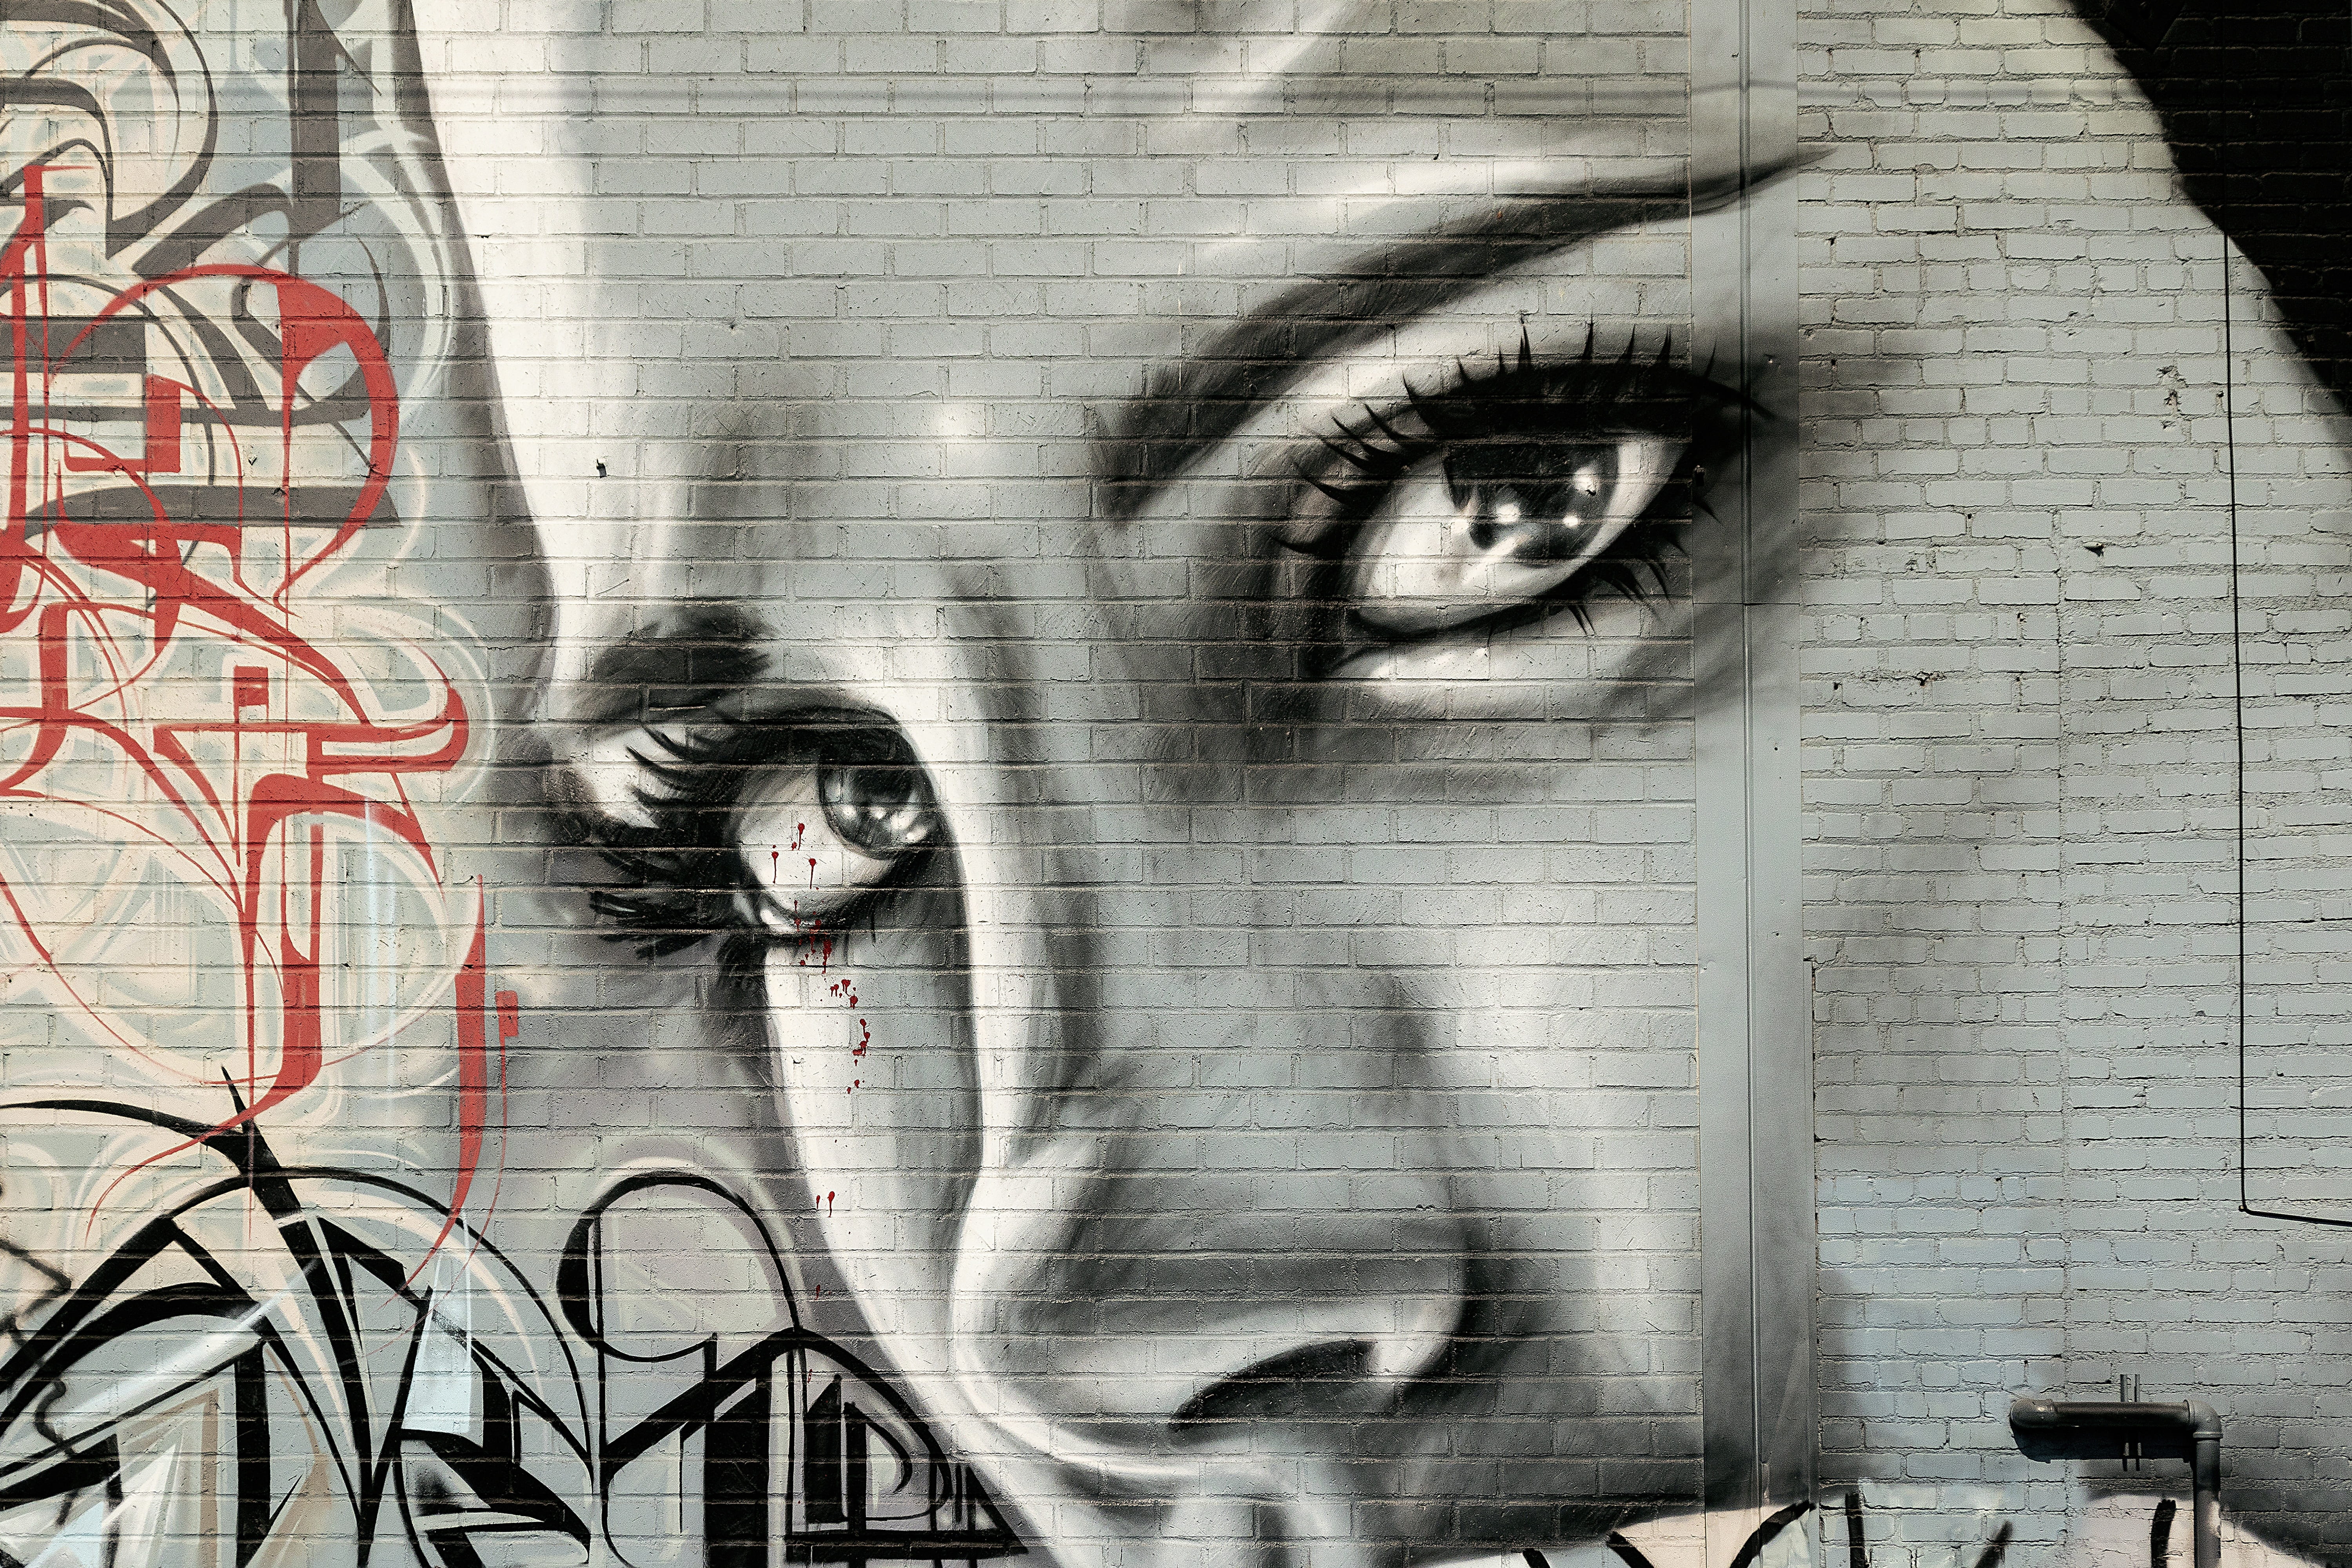 face woman, graffiti, grunge, street art, graffiti wall, graffiti art